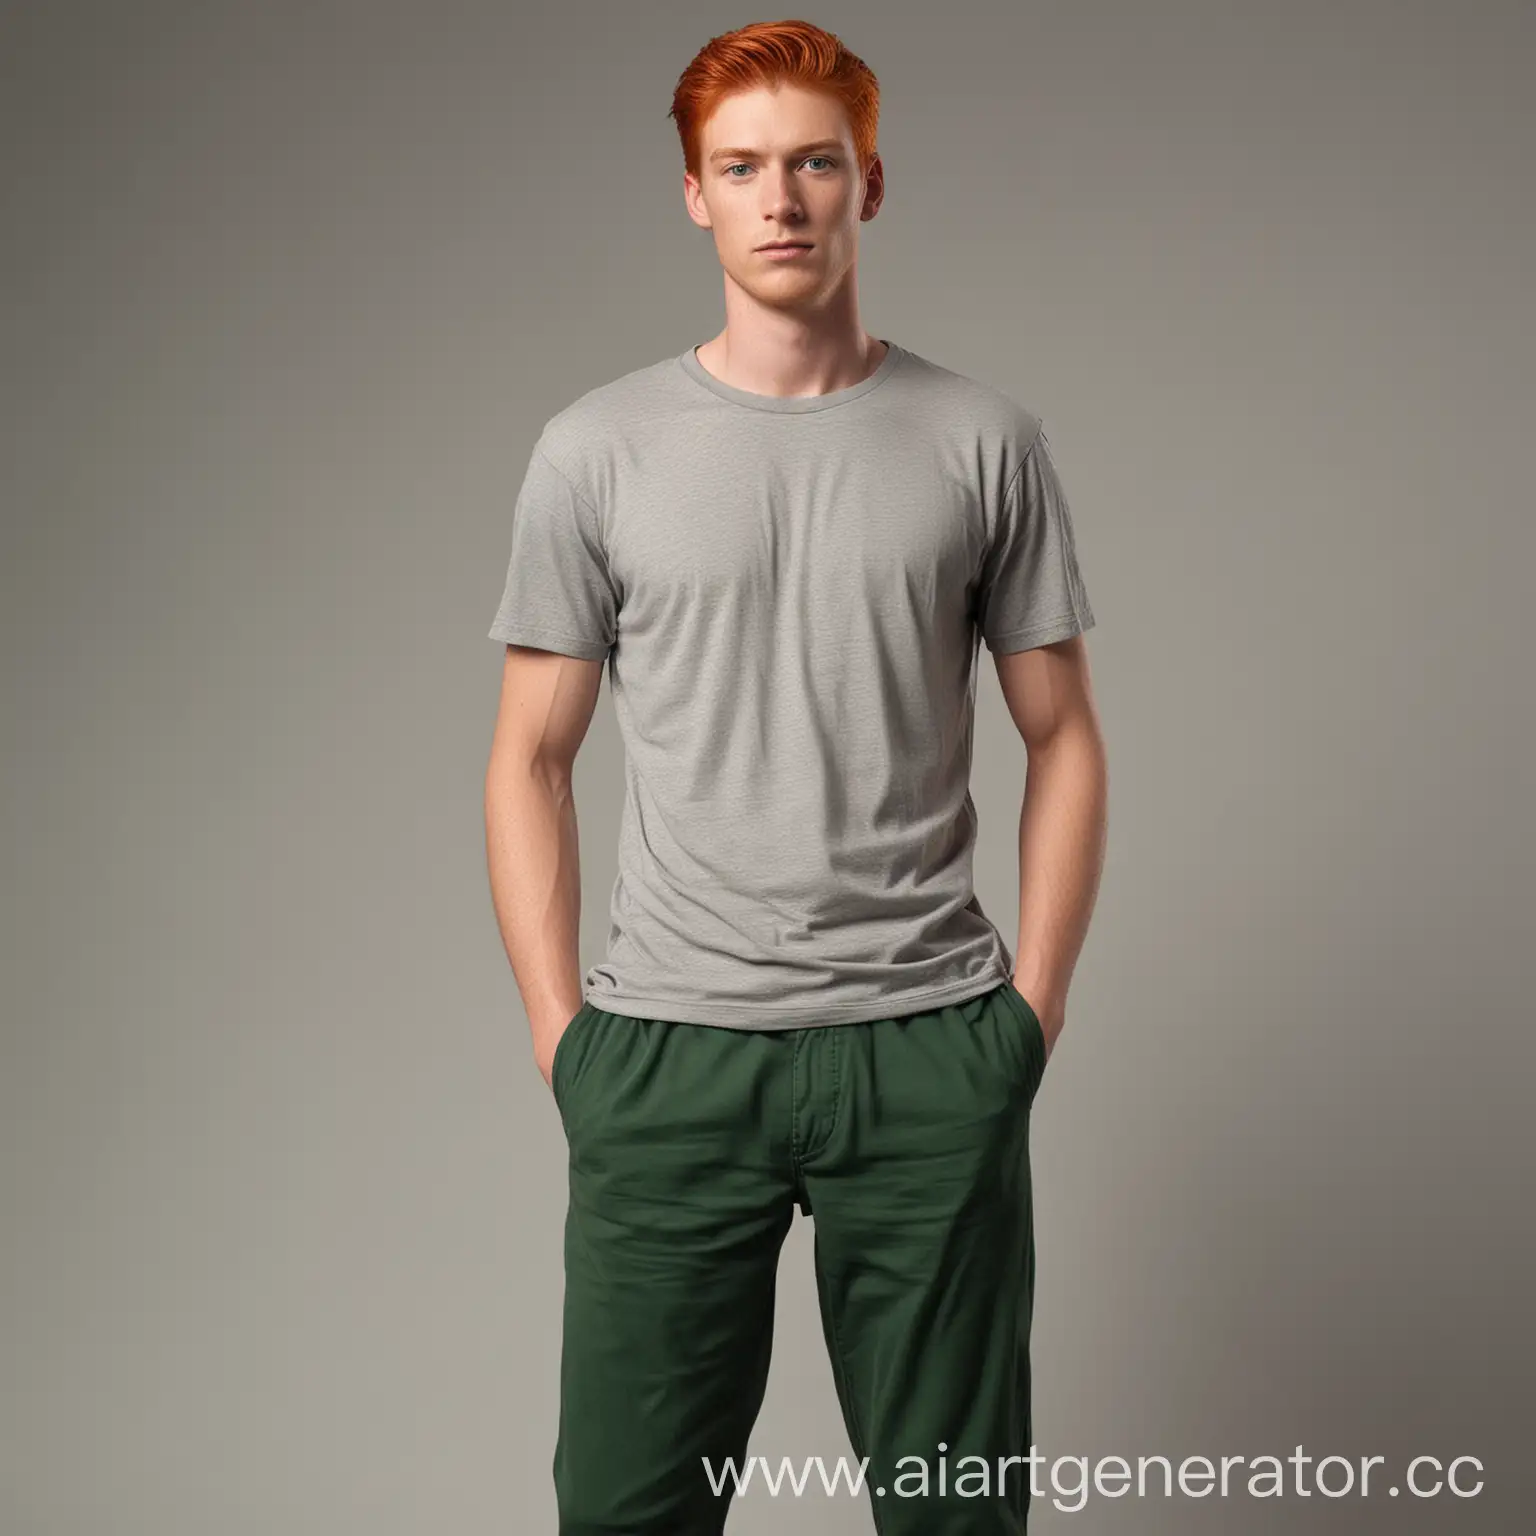 Человек высокого роста с рыжими волосами и зелёными глазами, стройного телосложение с футболке и длинных штанах на вид 20 лет